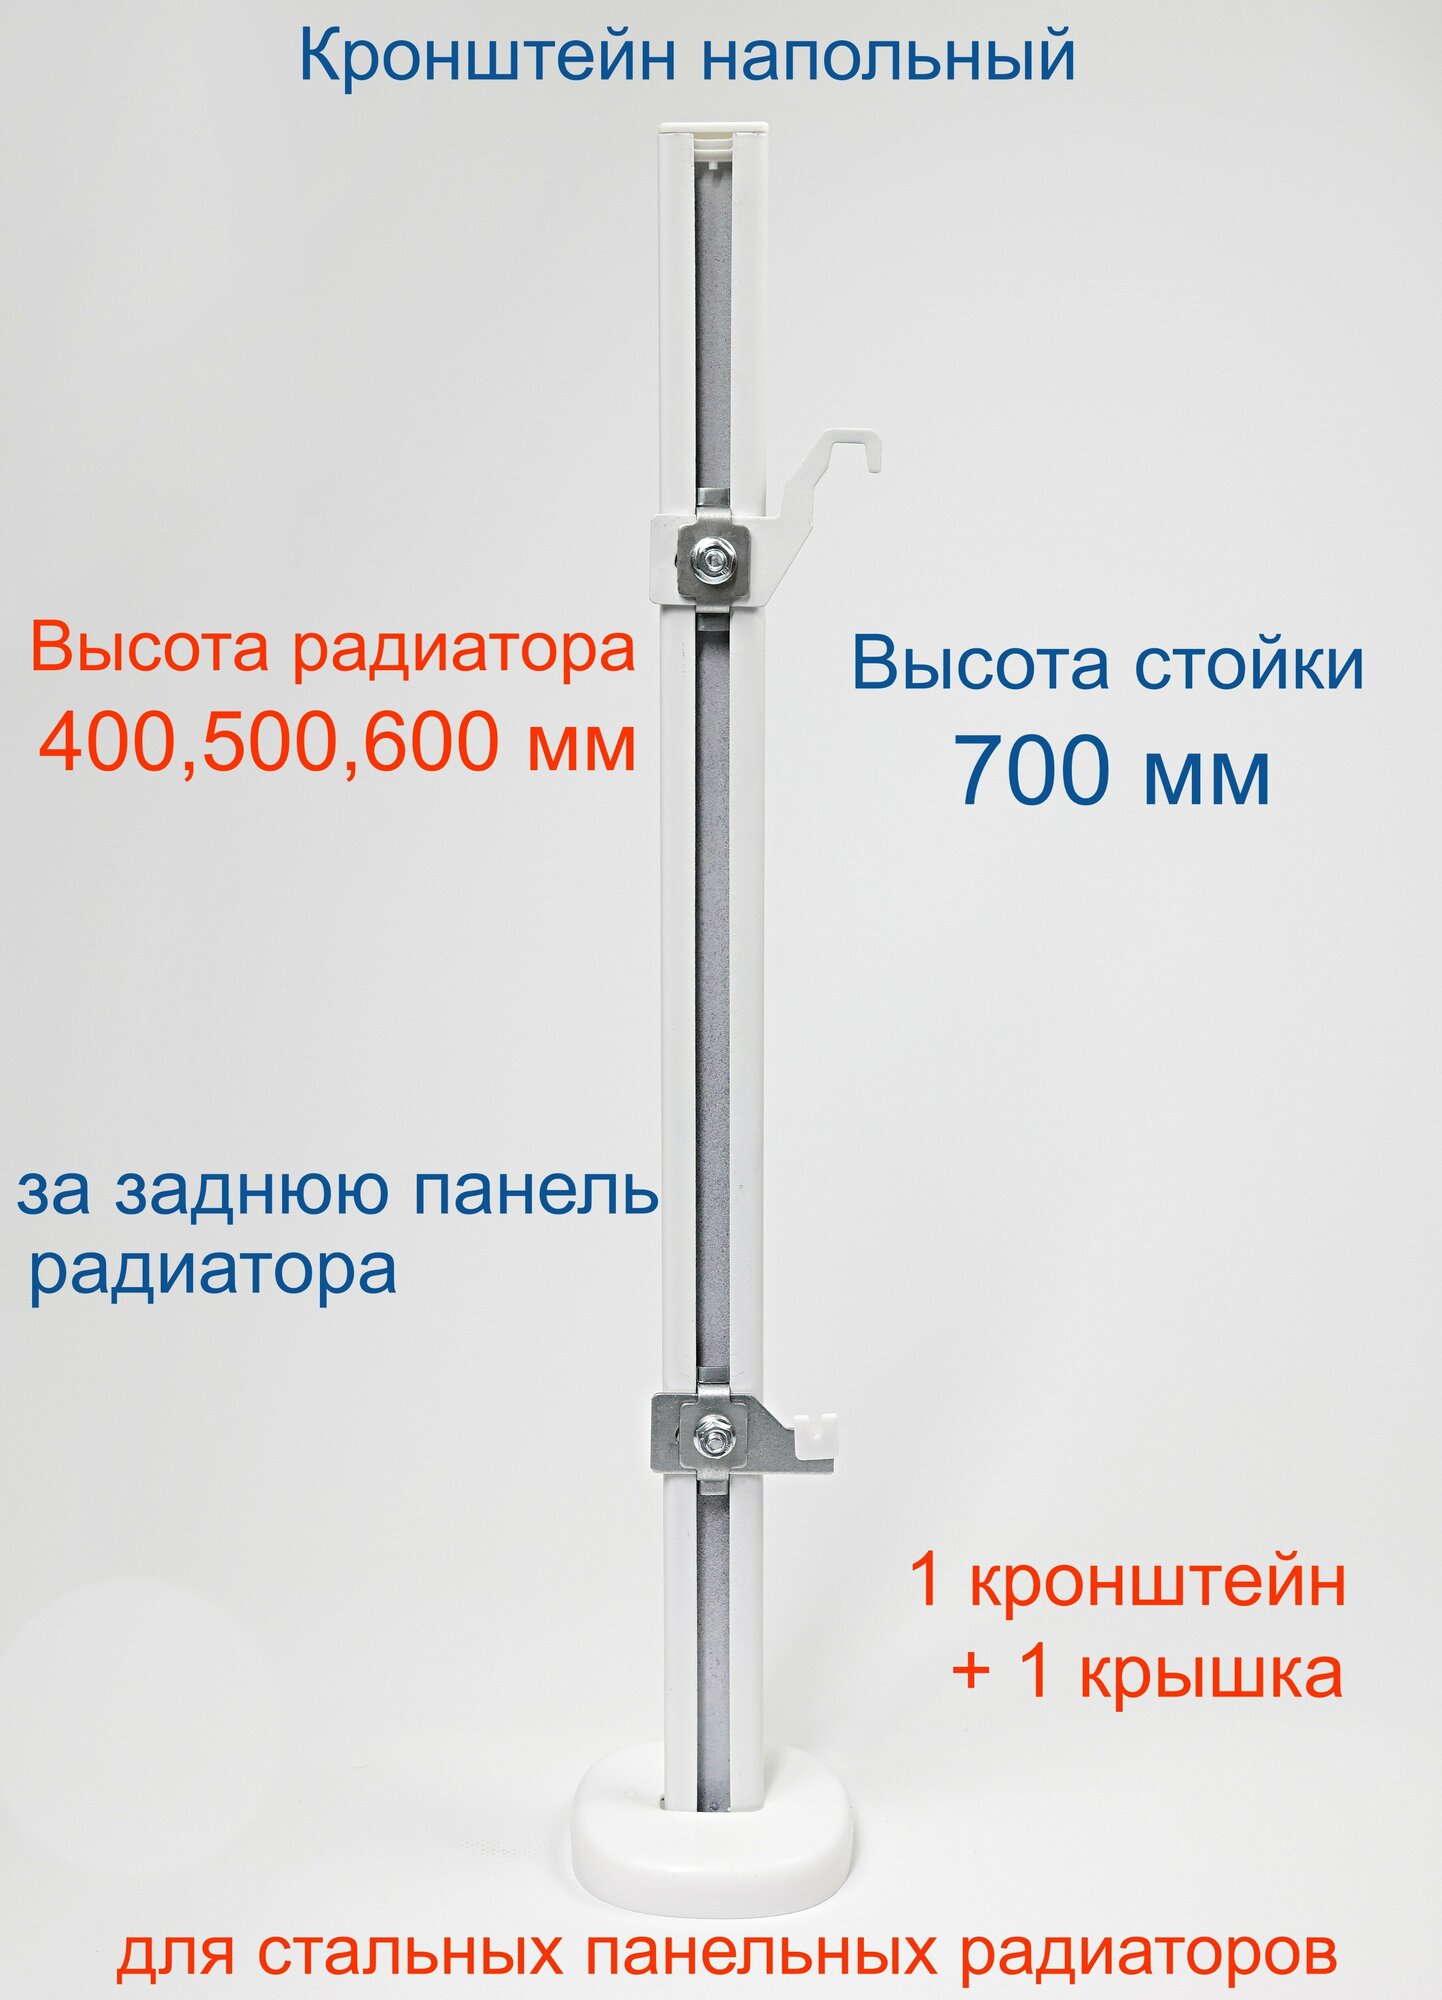 Кронштейн напольный регулируемый Кайрос KHZ49.70 для стальных панельных радиаторов высотой 400, 500, 600 мм (высота стойки 700 мм)